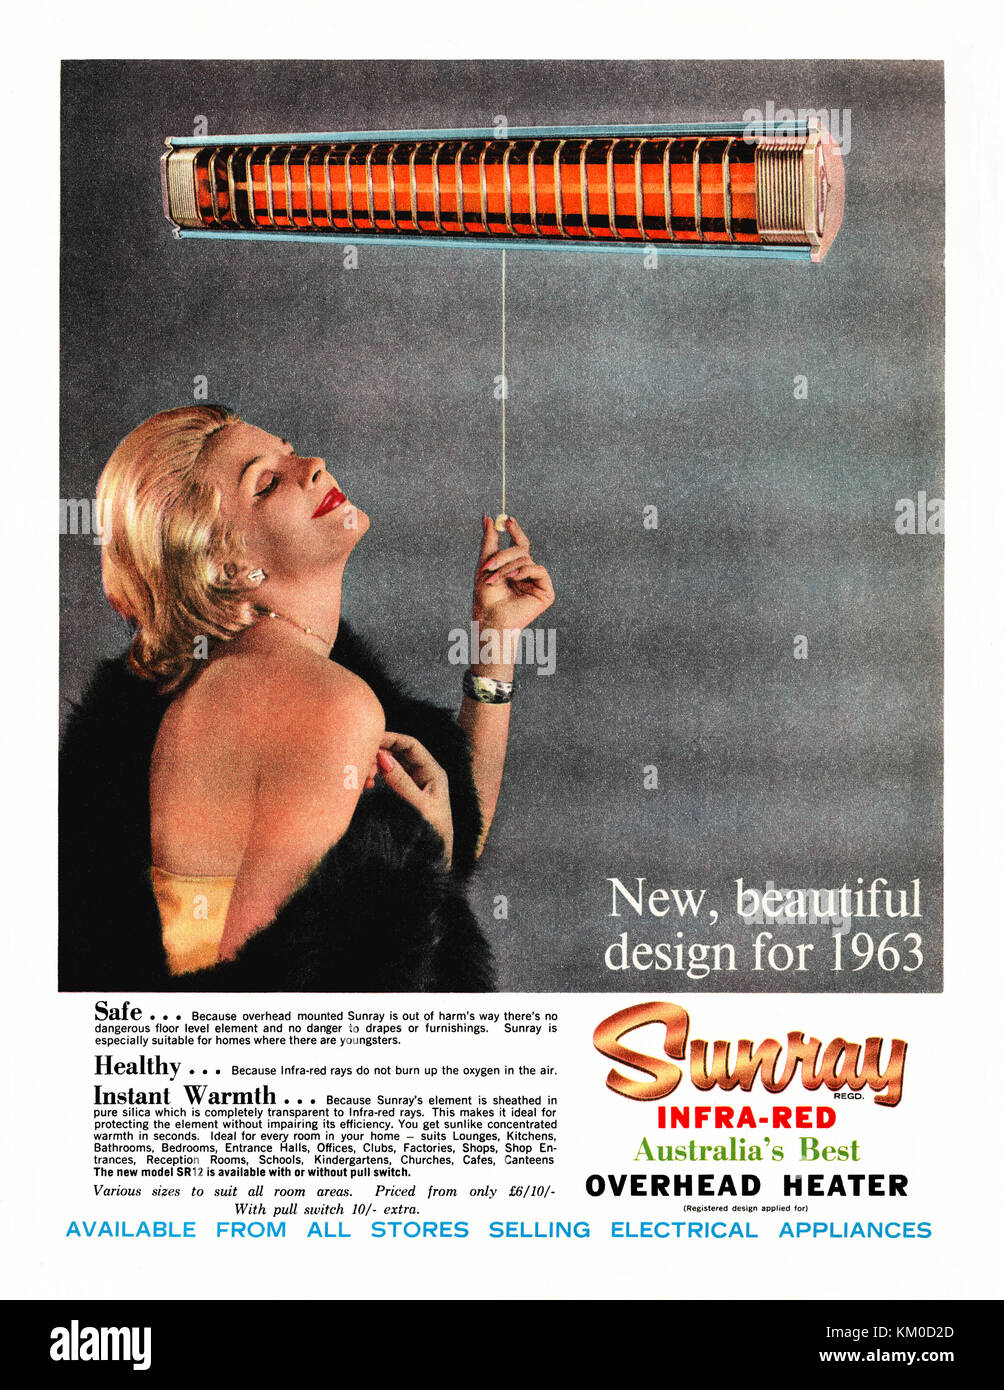 Eine Werbung aus dem Jahr 1963 für Sunray Infrarot-Wandheizungen. Es erschien in einer australischen Zeitschrift. Das Foto zeigt eine glamouröse Frau, die unter der Wärme der elektrischen Heizung lächelt. Interessanterweise trägt sie drinnen einen gestohlenen Pelzmantel! Eine Infrarot-Wärmelampe ist eine Glühlampe, die zur Erzeugung von Wärme verwendet wird. Sie wurden oft in Küchen und Badezimmern verwendet, bevor Zentralheizung häufiger wurde Stockfoto